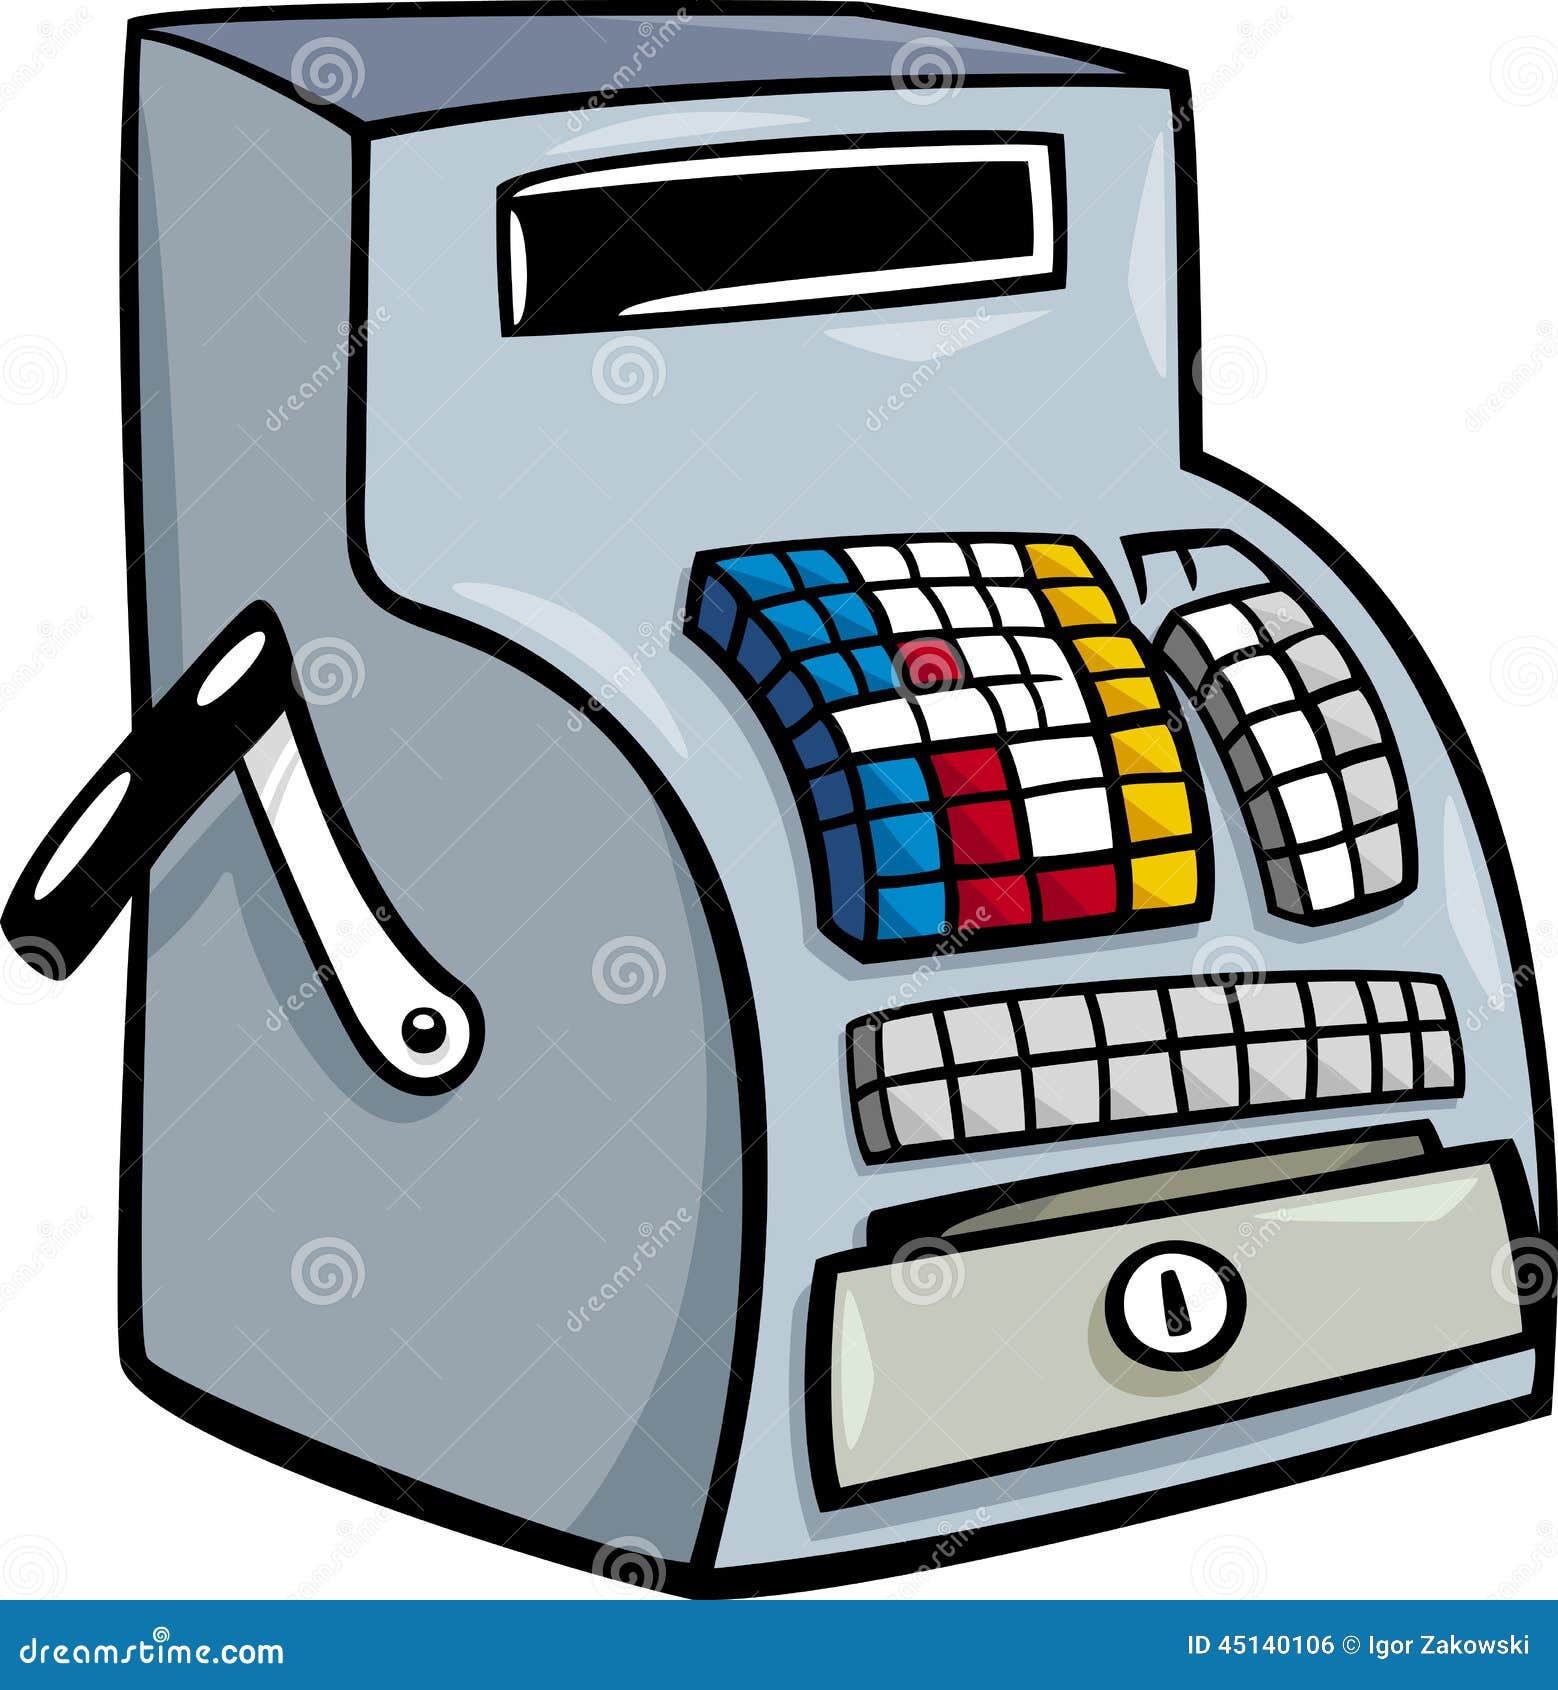 till or cash register cartoon clip art